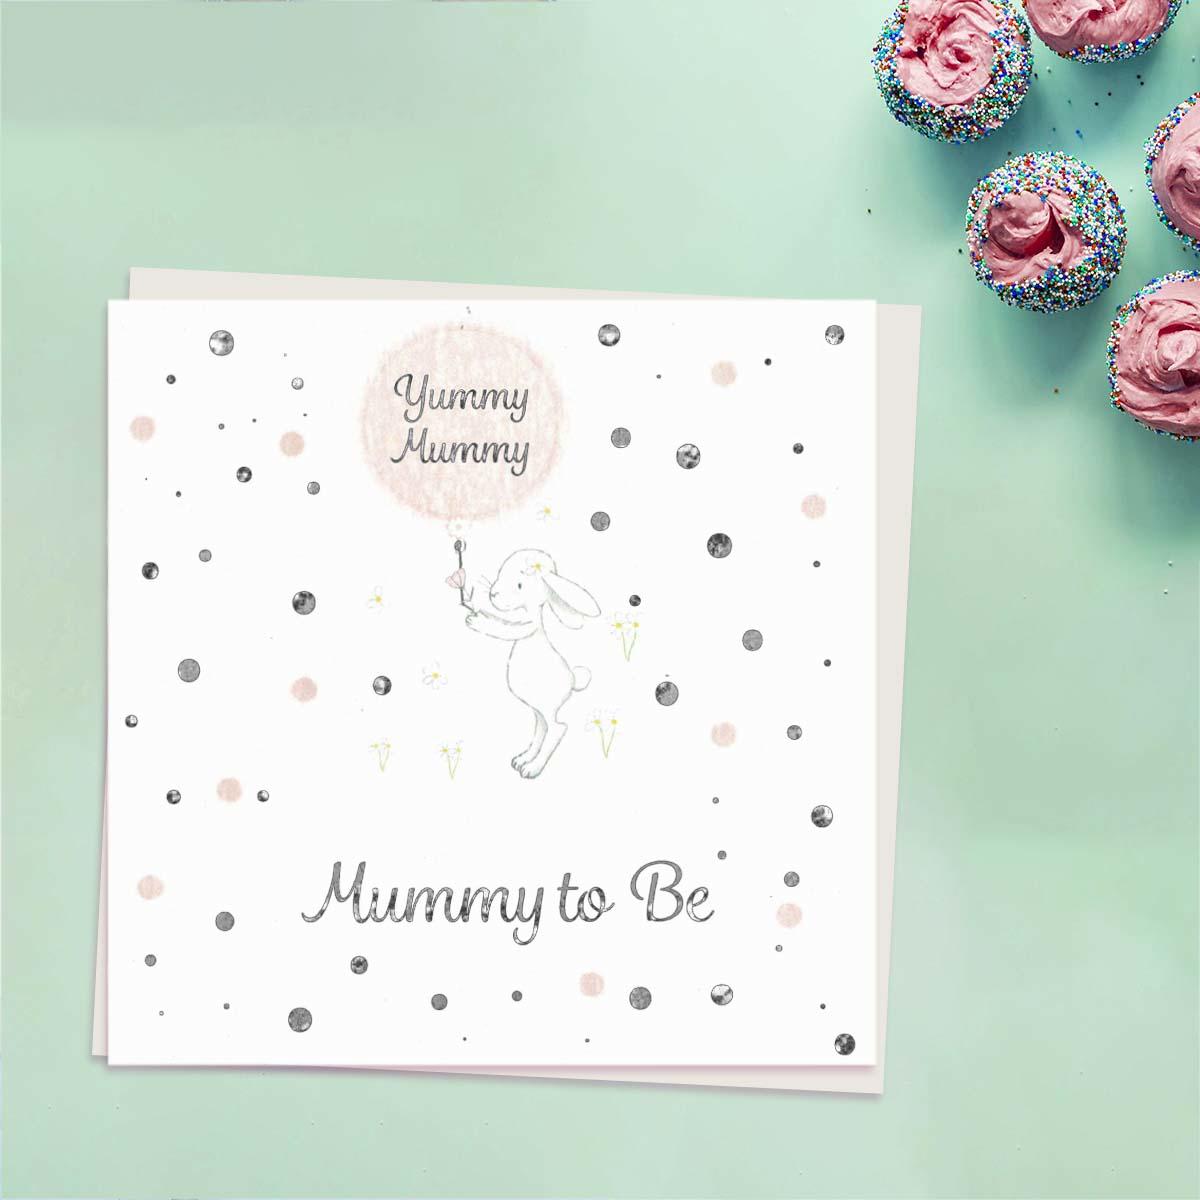 Yummy Mummy - Mummy To Be Card Front Image